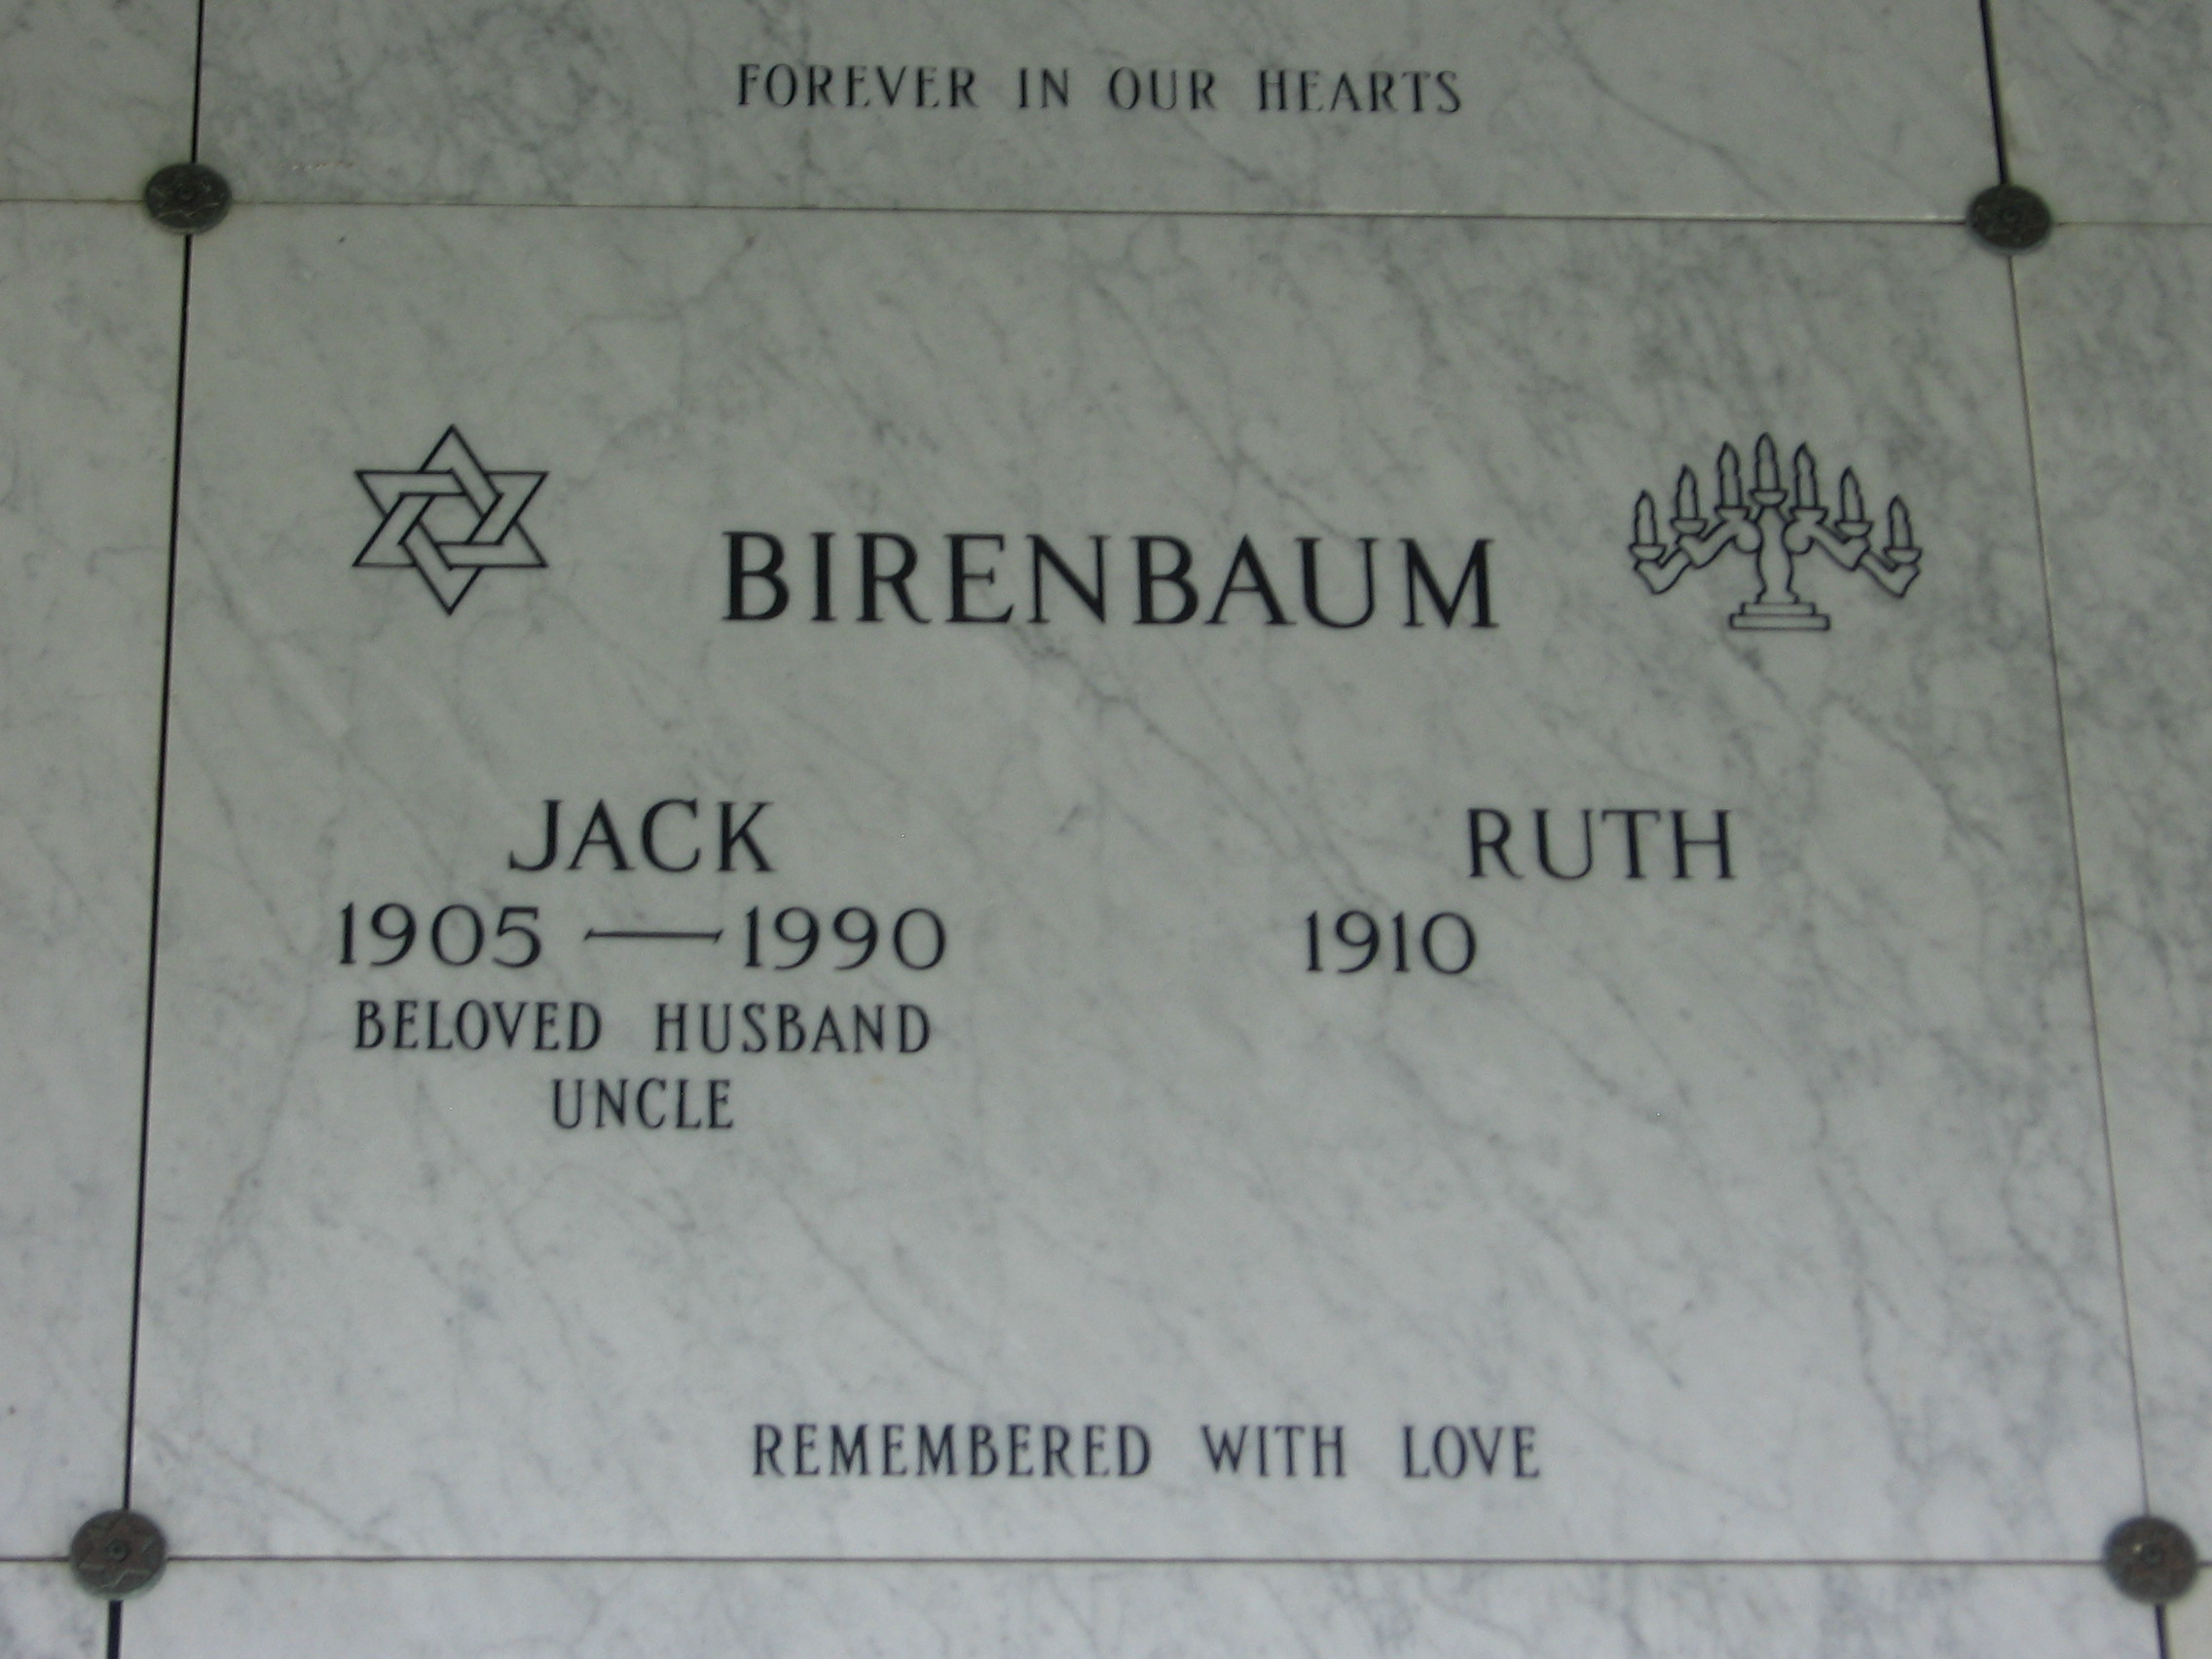 Jack Birenbaum